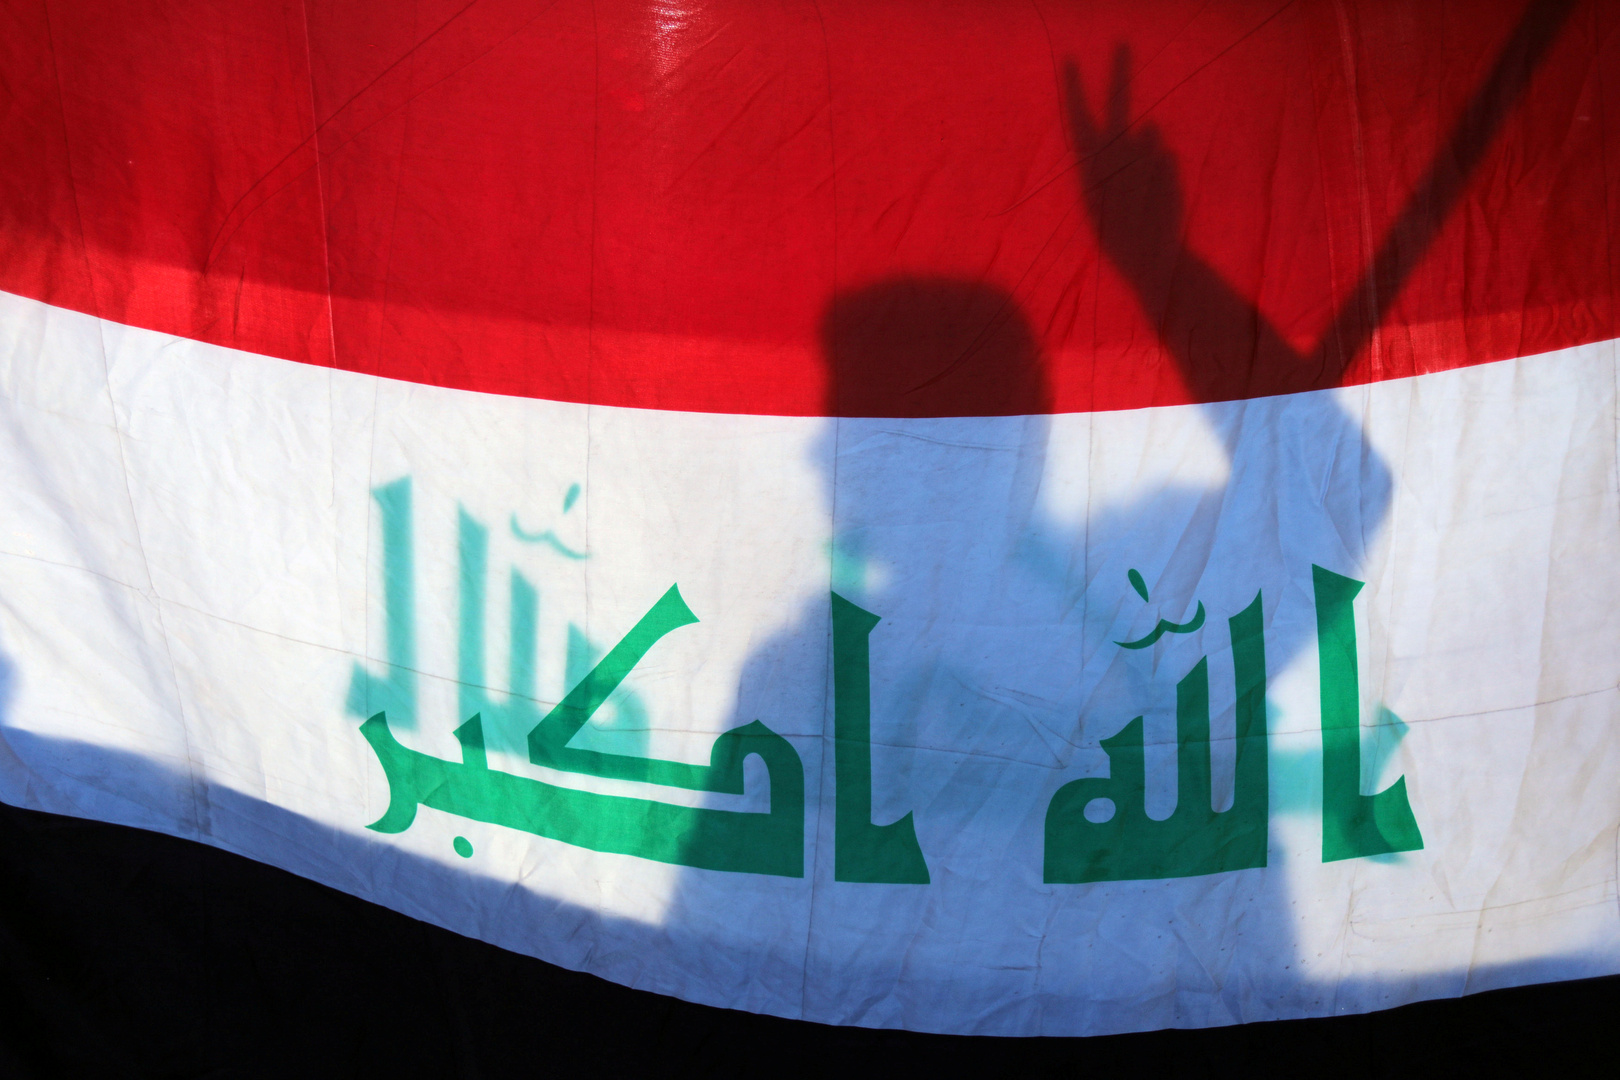 الحكومة العراقية تصدر بيانا بشأن التطبيع مع إسرائيل وتصف اجتماع أربيل بغير القانوني